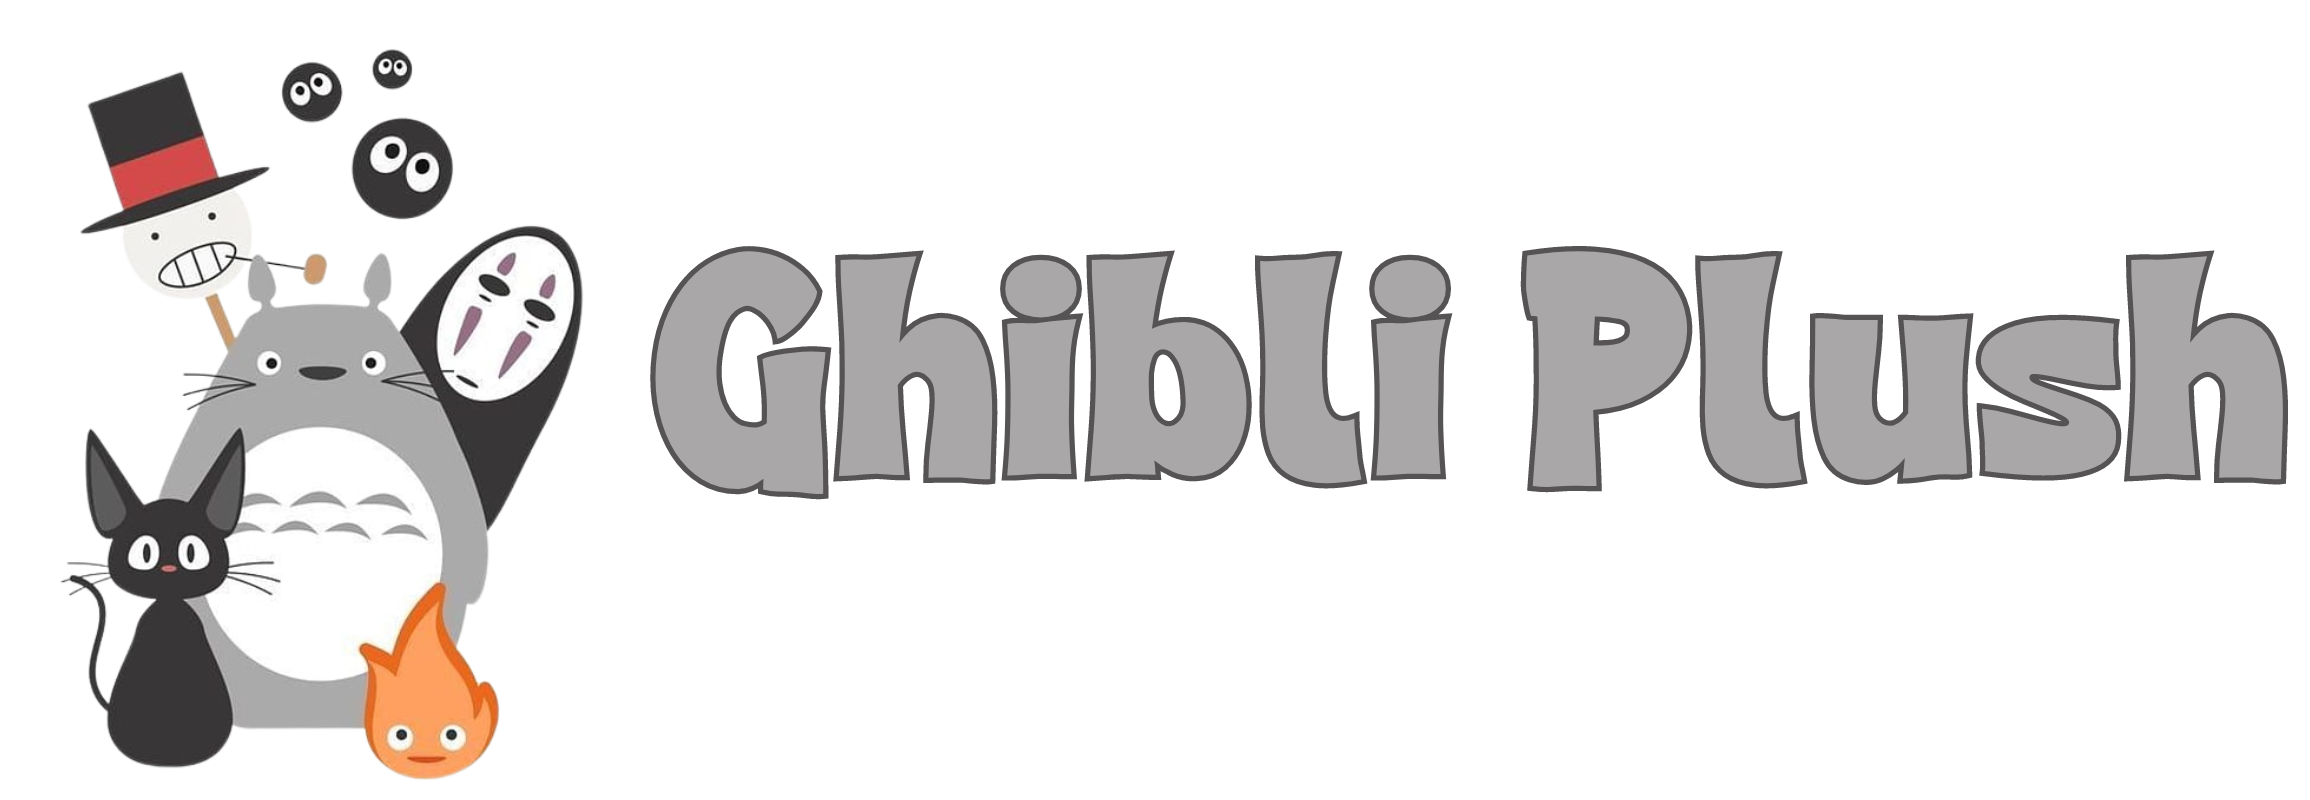 Ghibli Plush logo - Ghibli Plush